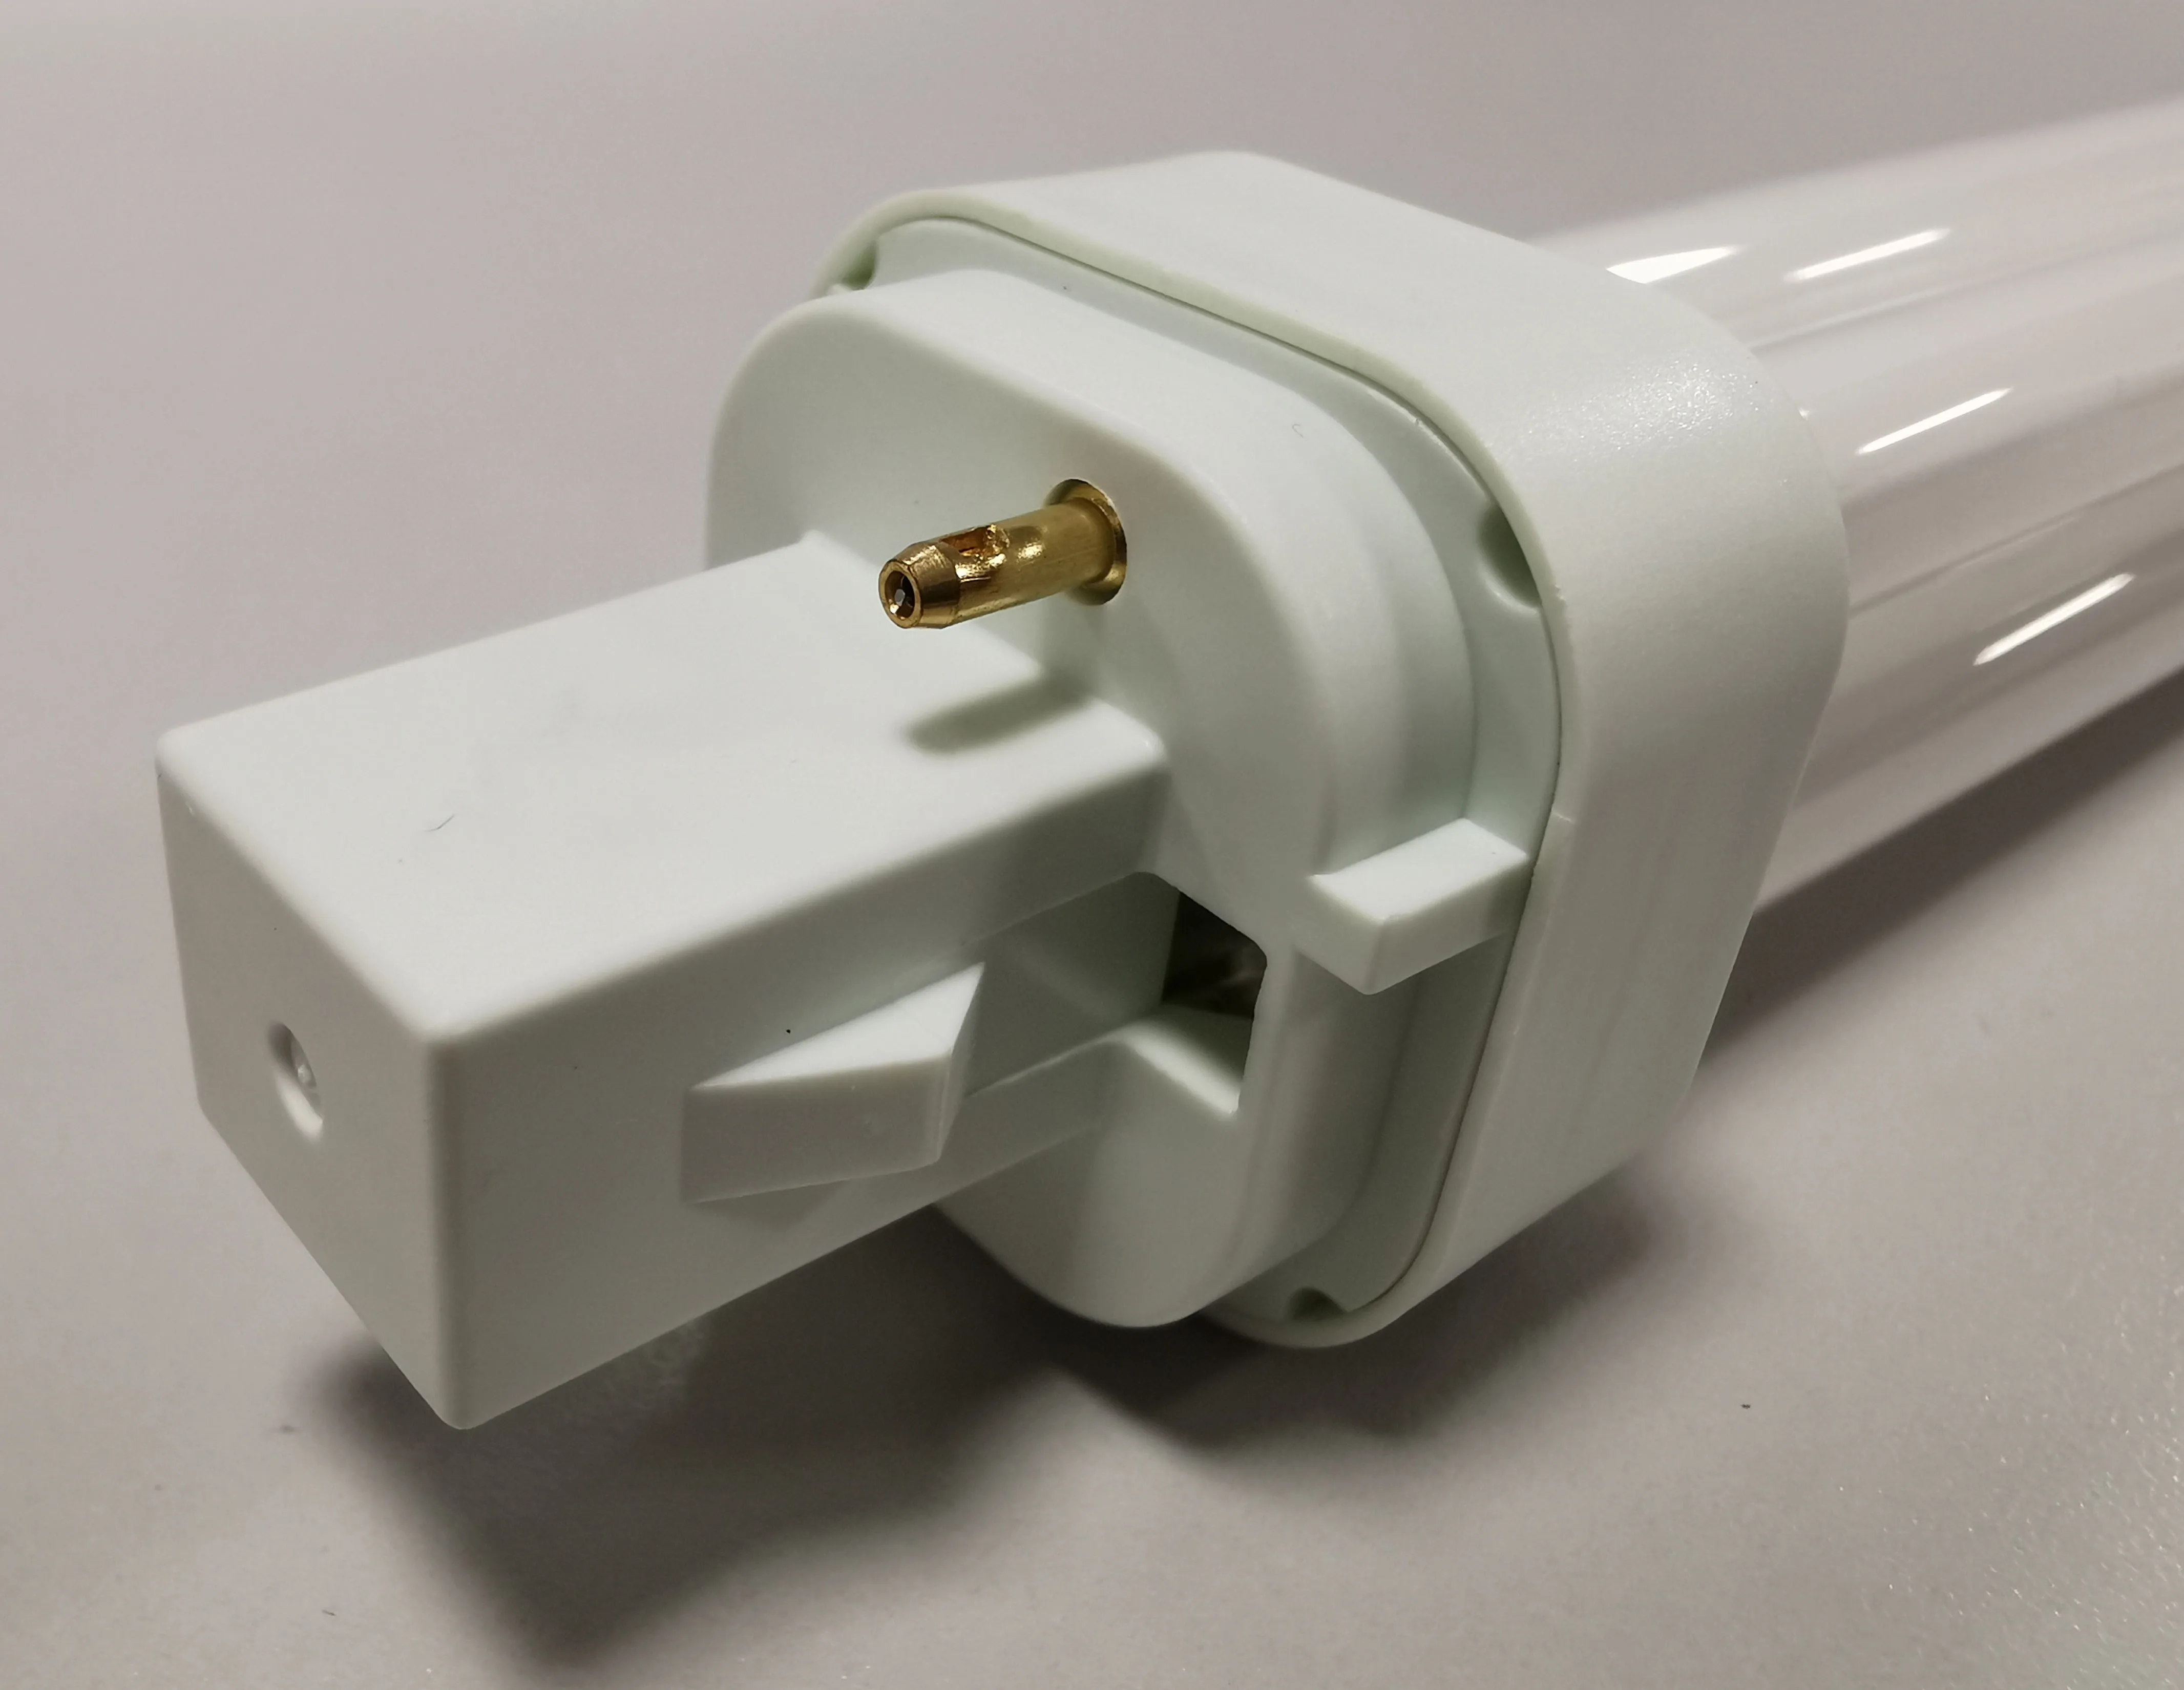  Компактная флуоресцентная лампа CFL PLC 2U Dulux энергосберегающая 2PIN 4PIN G24 с разъемом в течение длительного срока службы 10/13/18/26 Вт Ra80 без